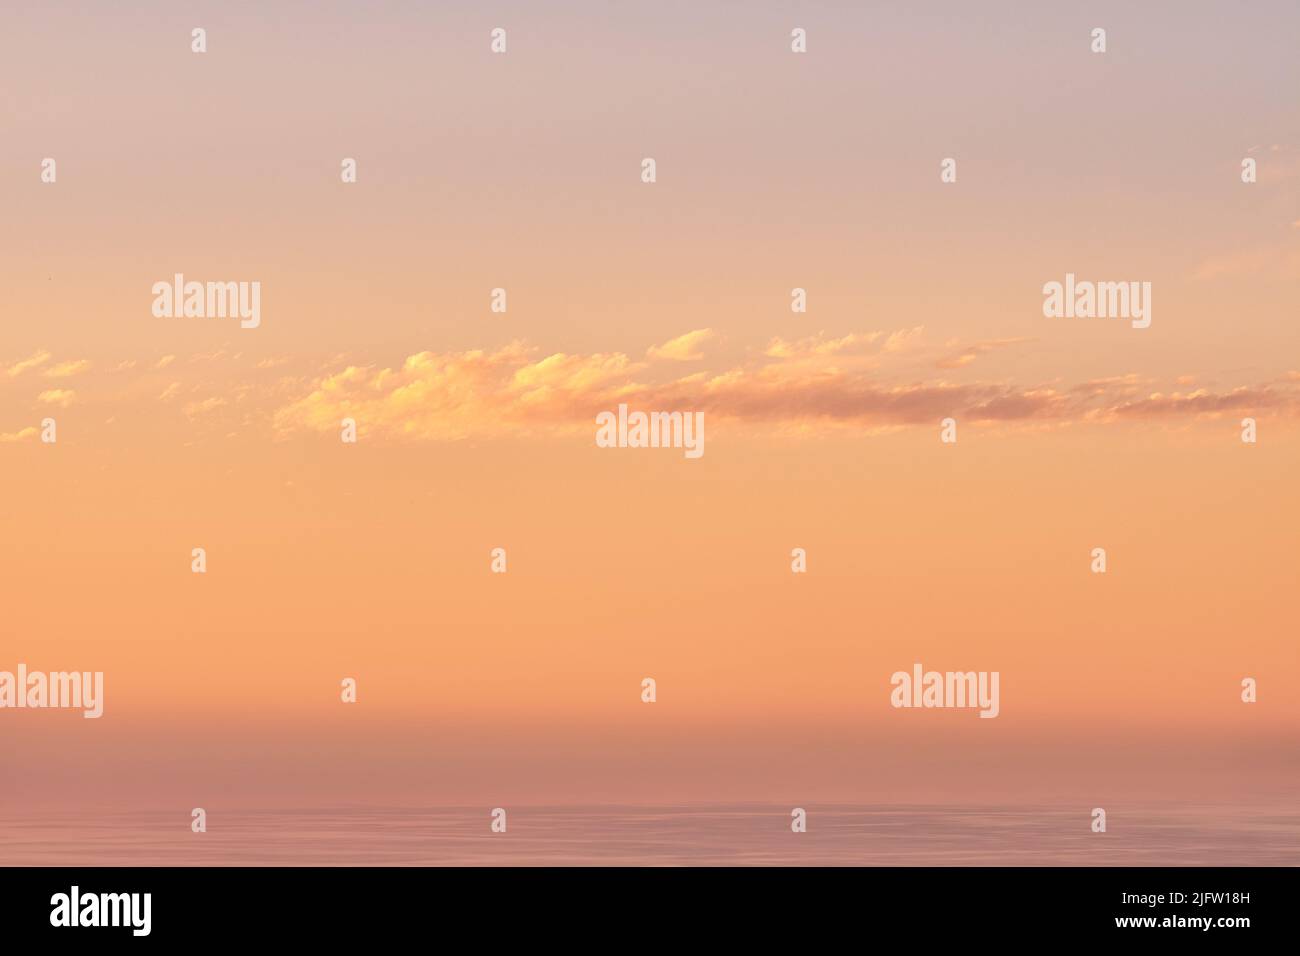 Seascape kopieren Raum mit Wolken in einem orange Sonnenuntergang Himmel mit einem Copyspace Hintergrund. Ruhig, friedlich, friedlich und mit Blick auf das Zen-Meer und das Meer Stockfoto